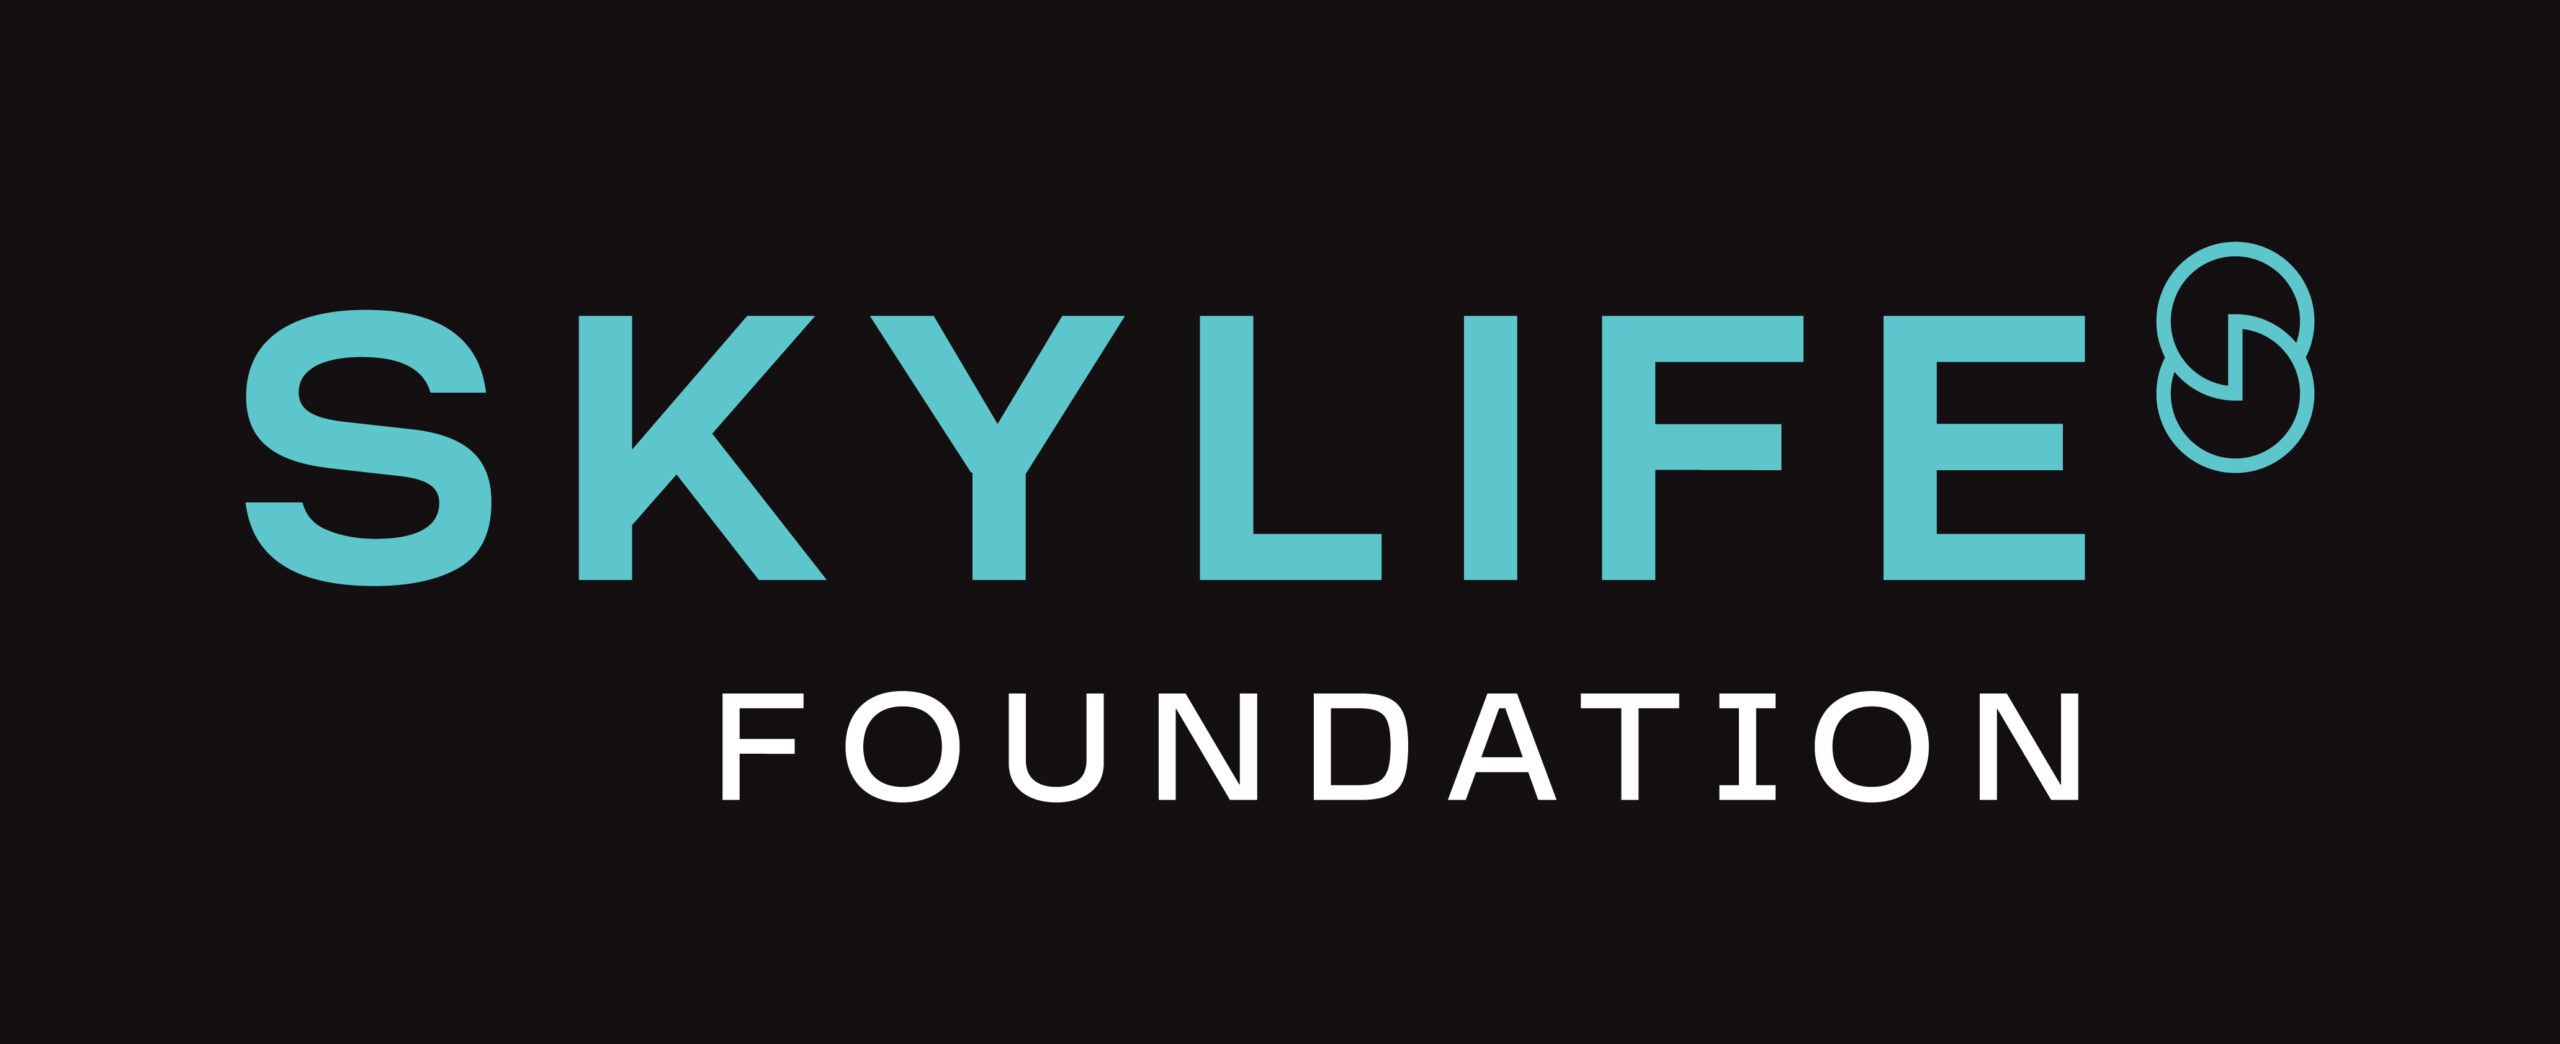 Skylife Foundation Black Bg CMYK Logo[56]